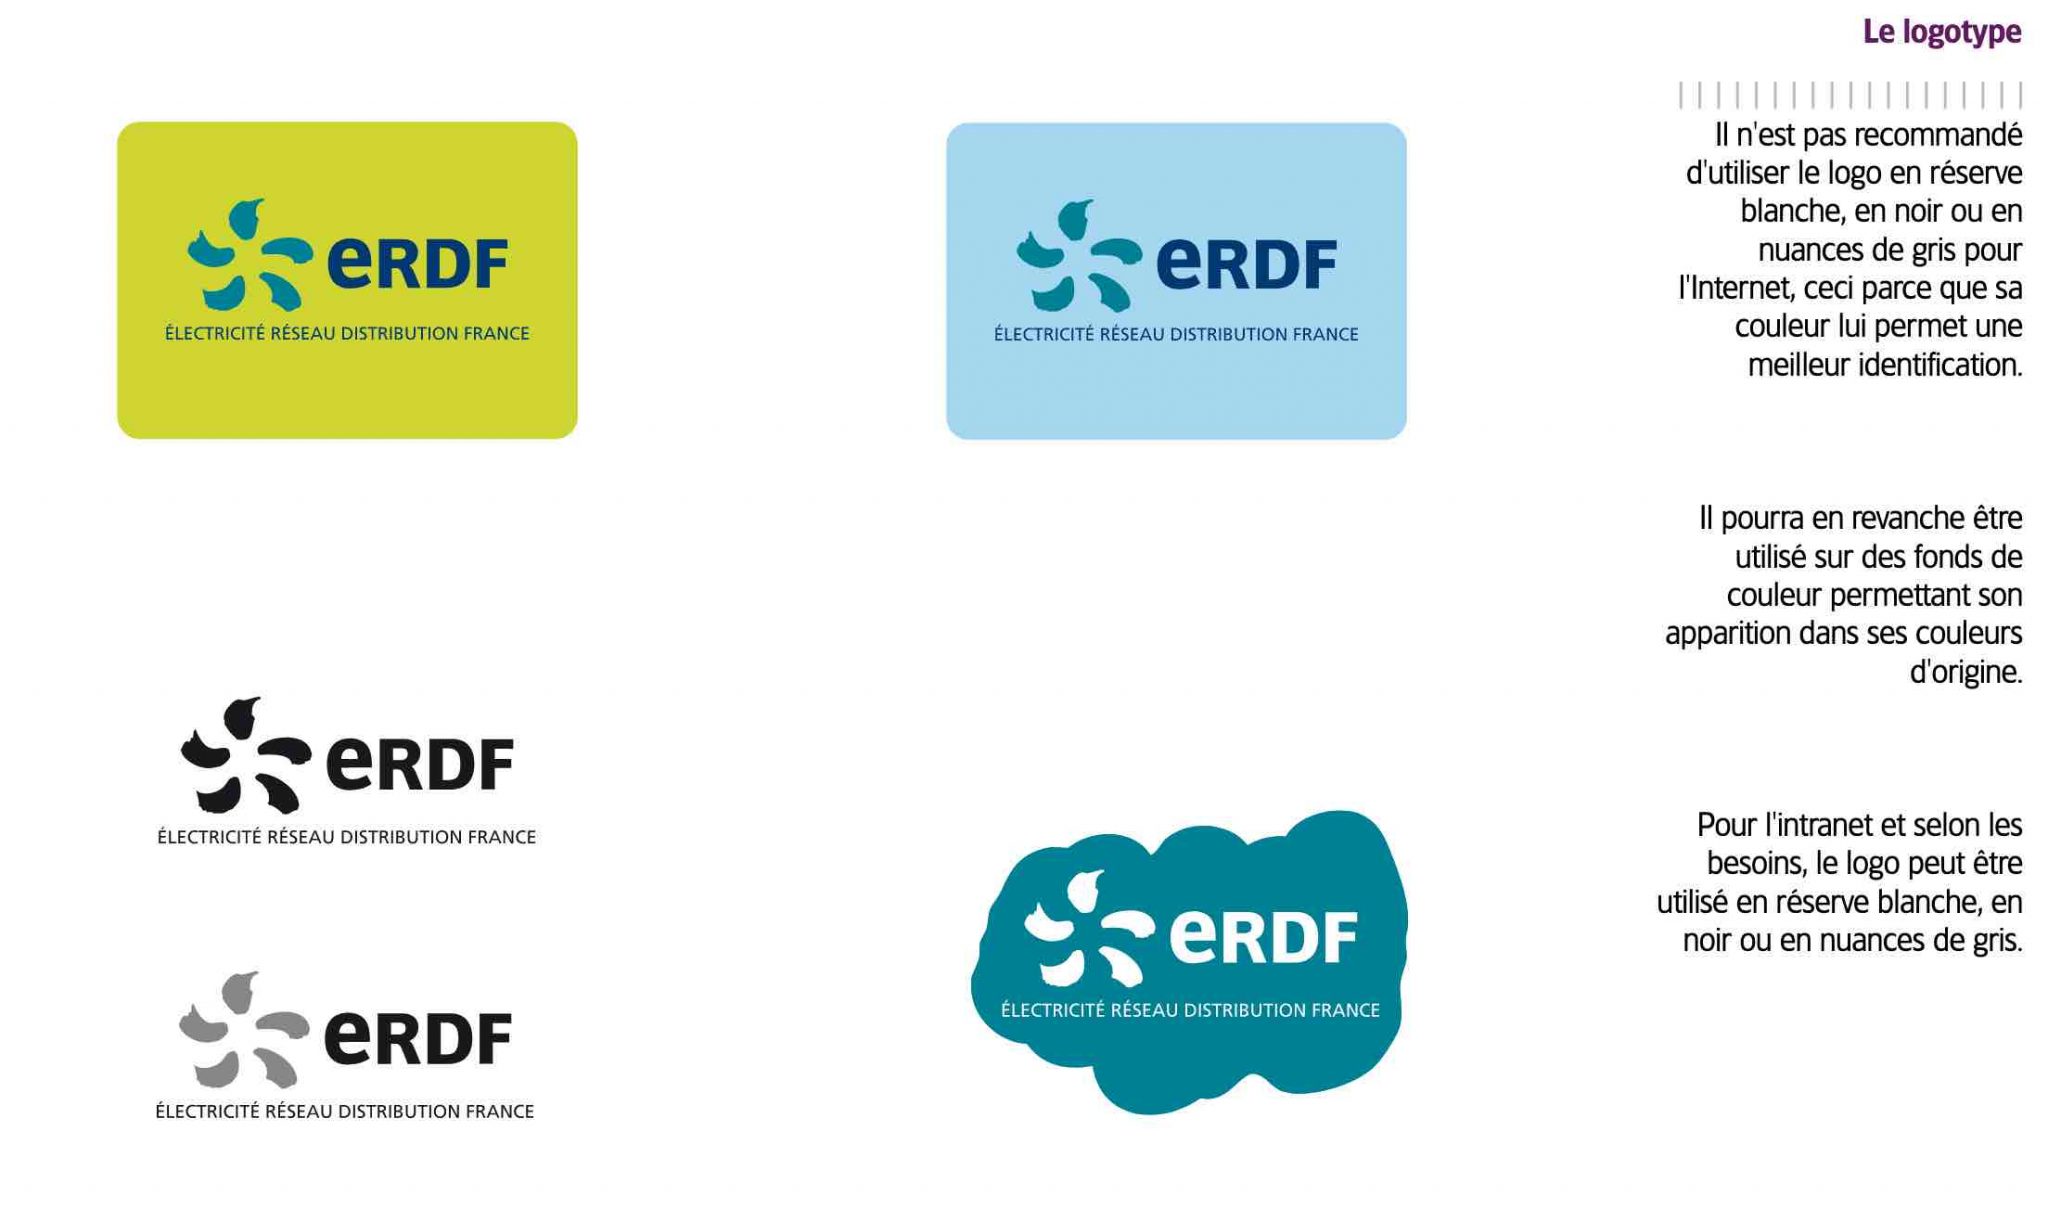 Le logotype sur la charte graphique web d'ERDF